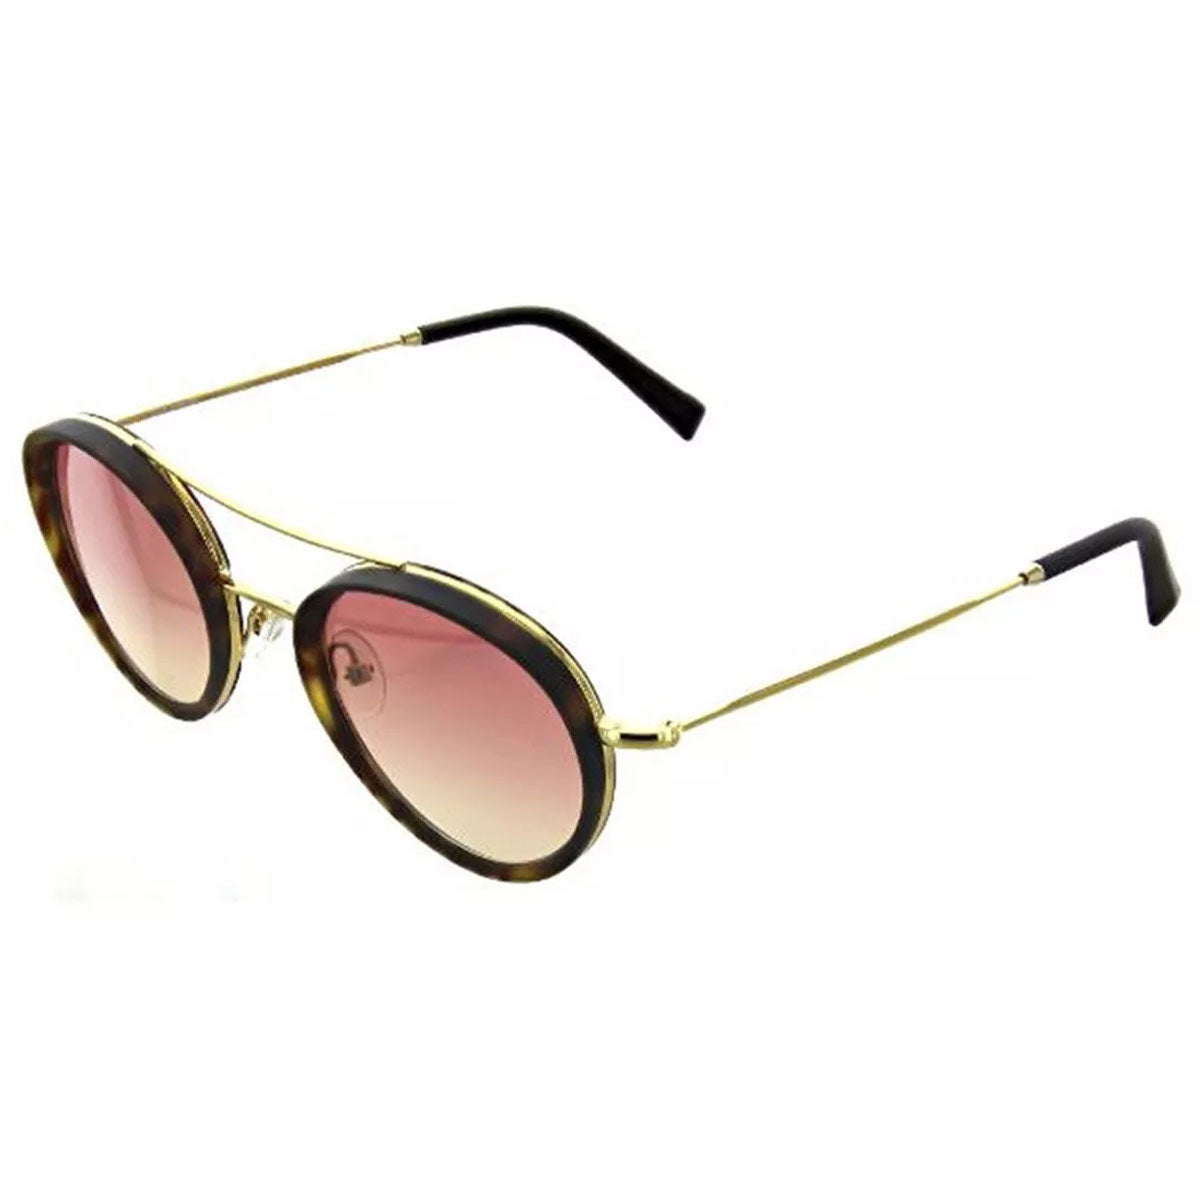 Bob Sdrunk Women's Sunglasses - Icaro Gold/Tortoise Frame / ICARO-10202-50-22-150